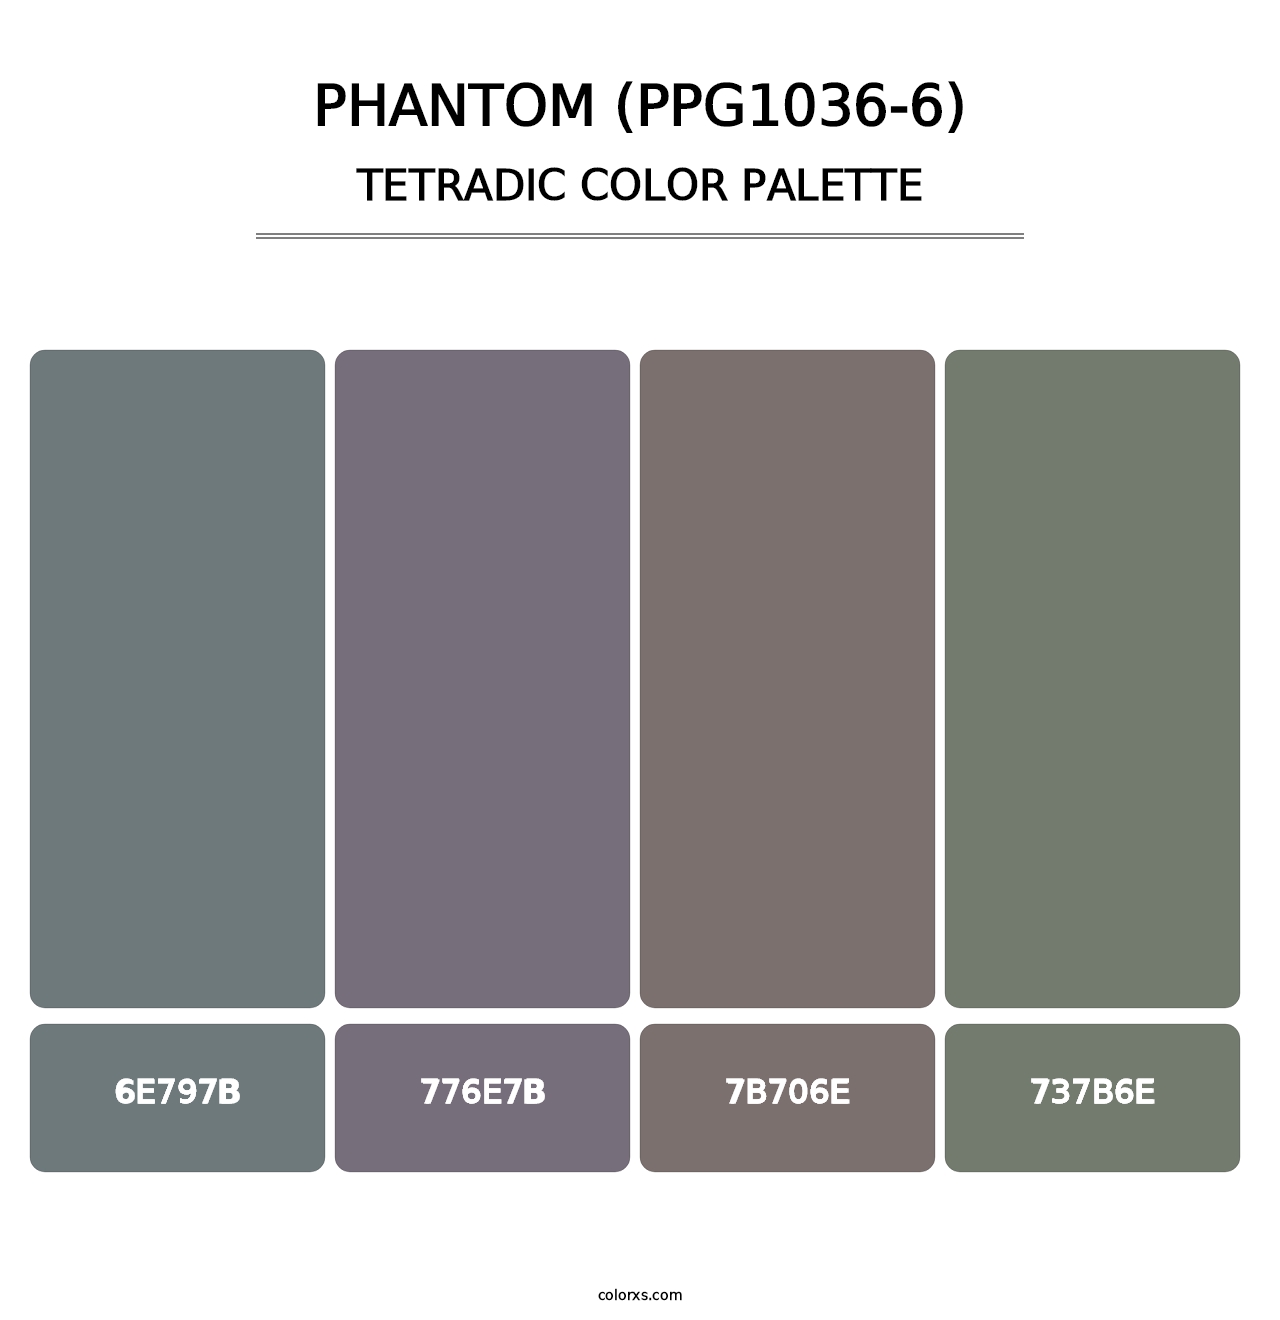 Phantom (PPG1036-6) - Tetradic Color Palette